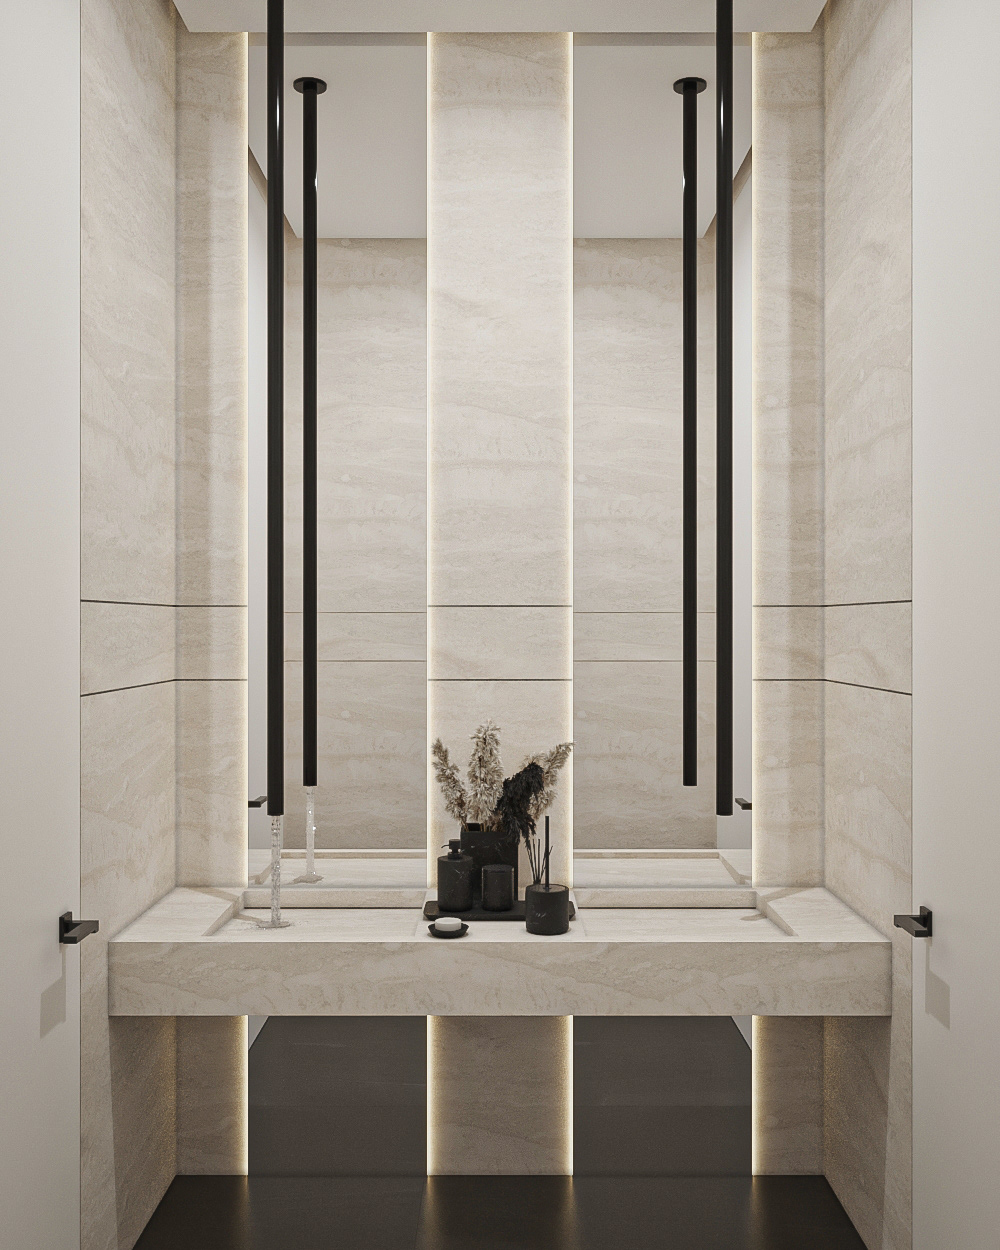 corona 3ds max Render visualization architecture modern interior design  lavatory Interior